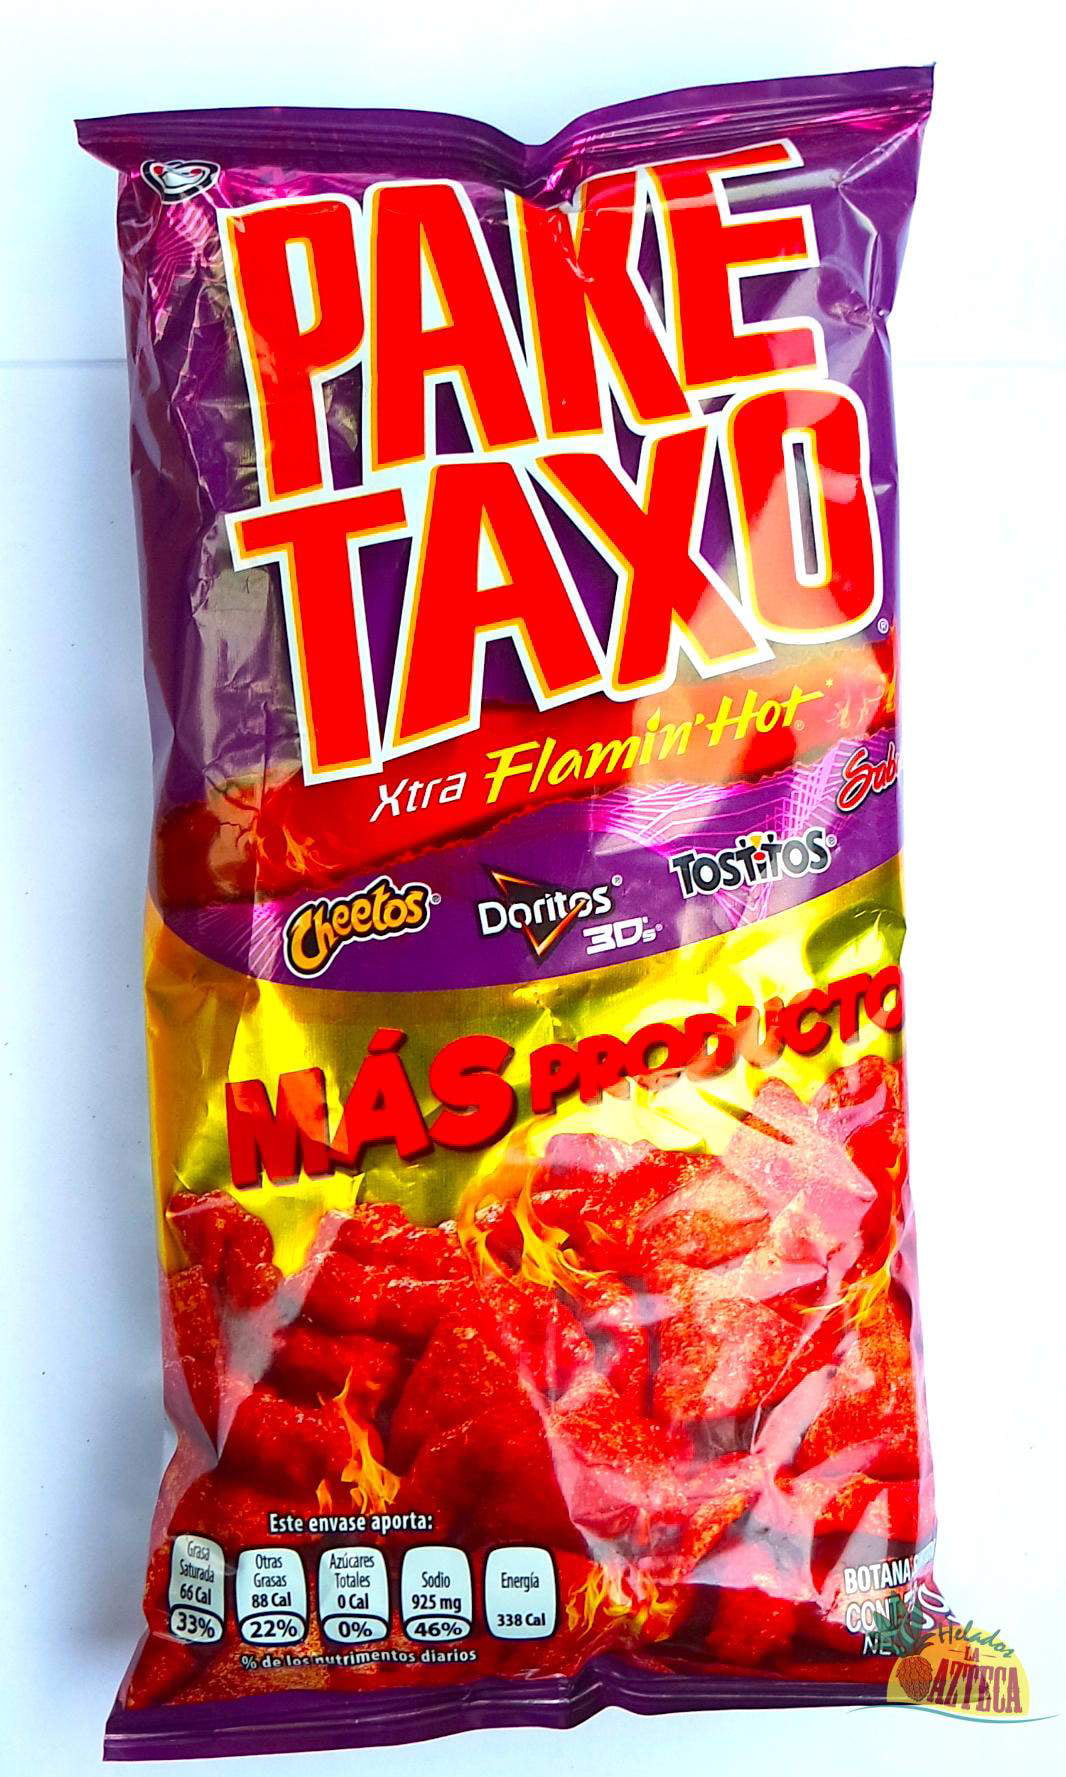 PakeTaxo Xtra Flamin Hot, 5 bags, each 73g | Variety Mexican Chip Bag